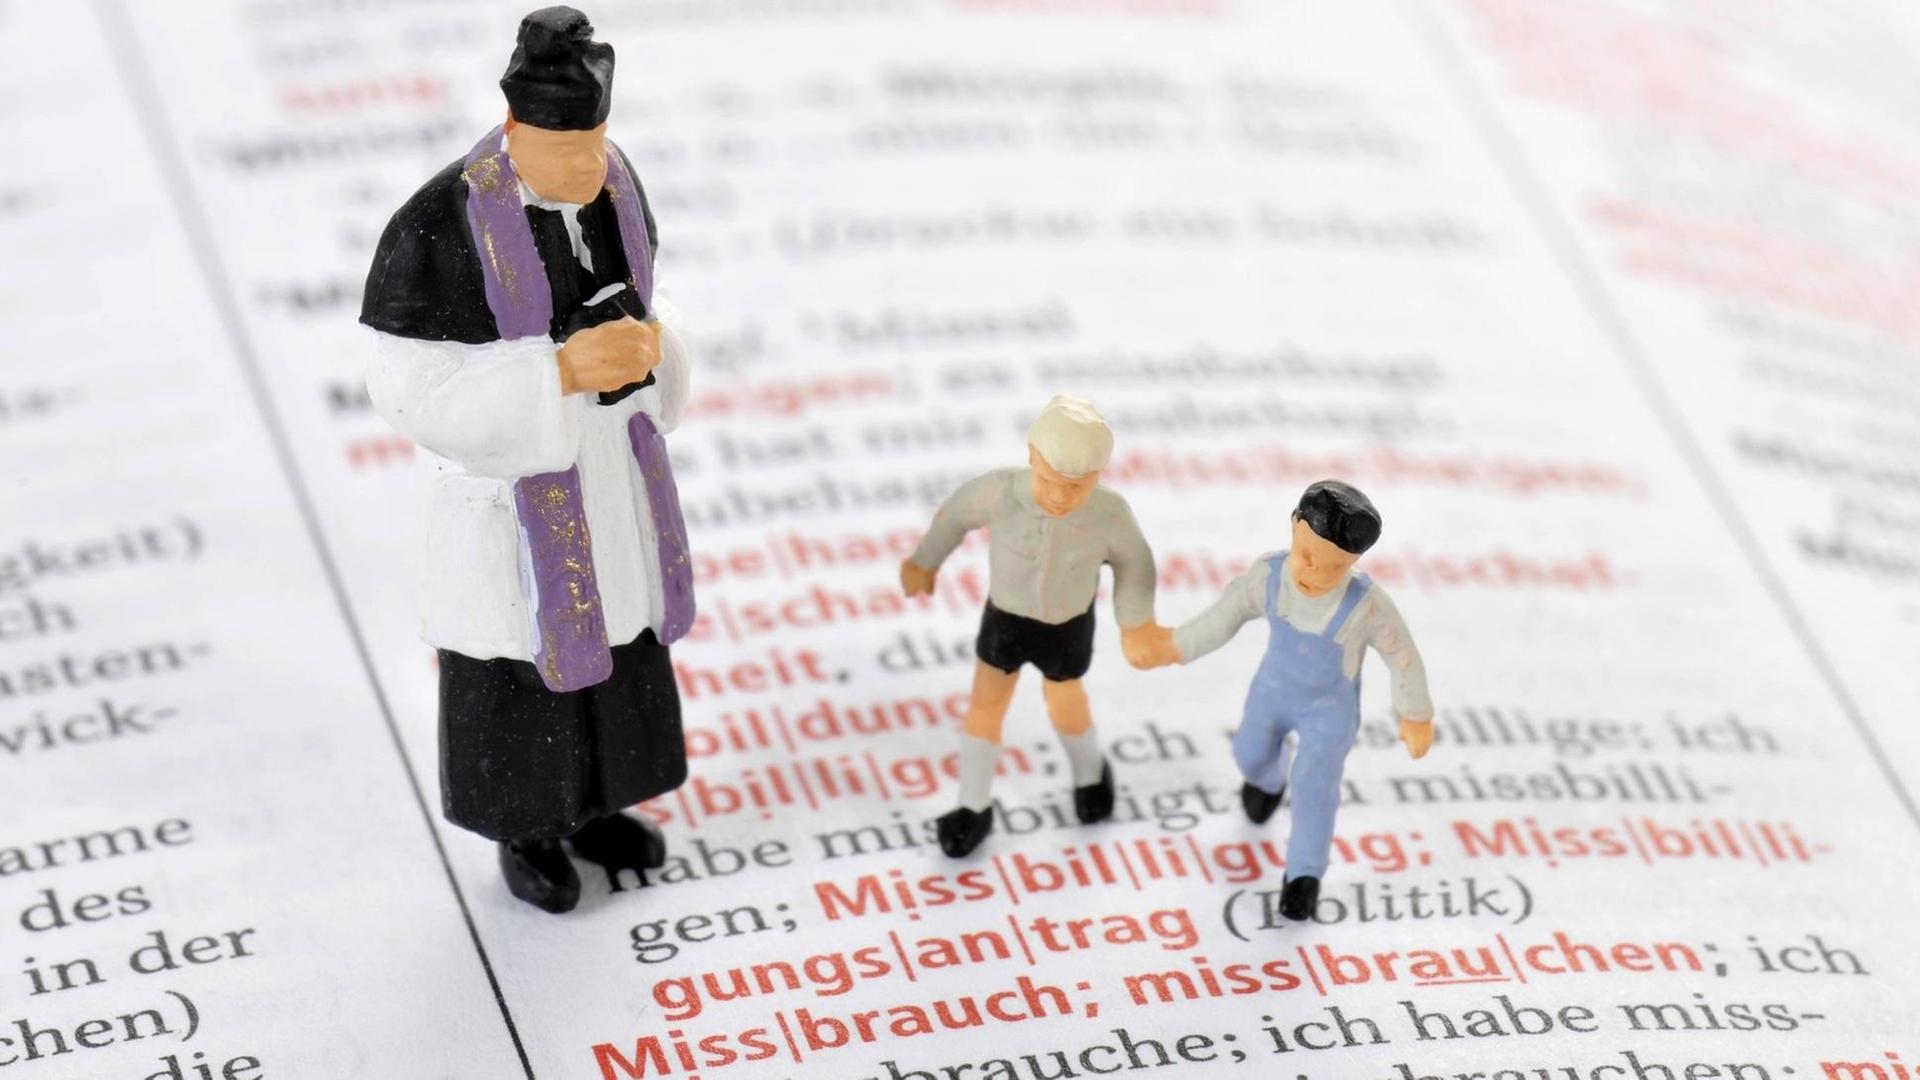 Modelleisenbahnfiguren eines Priesters und zweier Kinder auf einer aufgeschlagenen Wörterbuchseite vor dem Wort "Missbrauch"